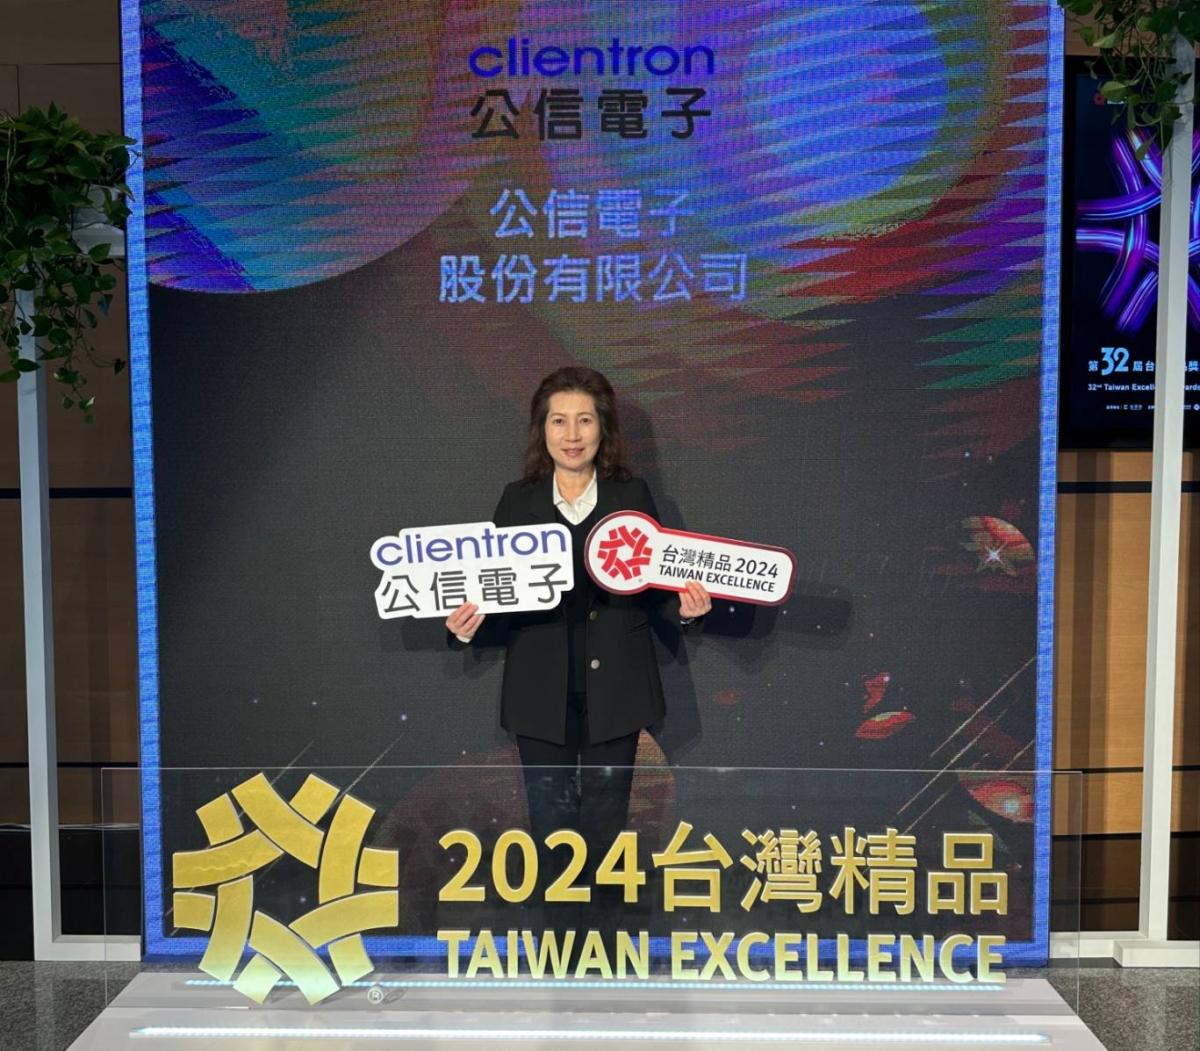 再度榮獲台灣精品獎肯定，公信電動車車載產品研發有成。